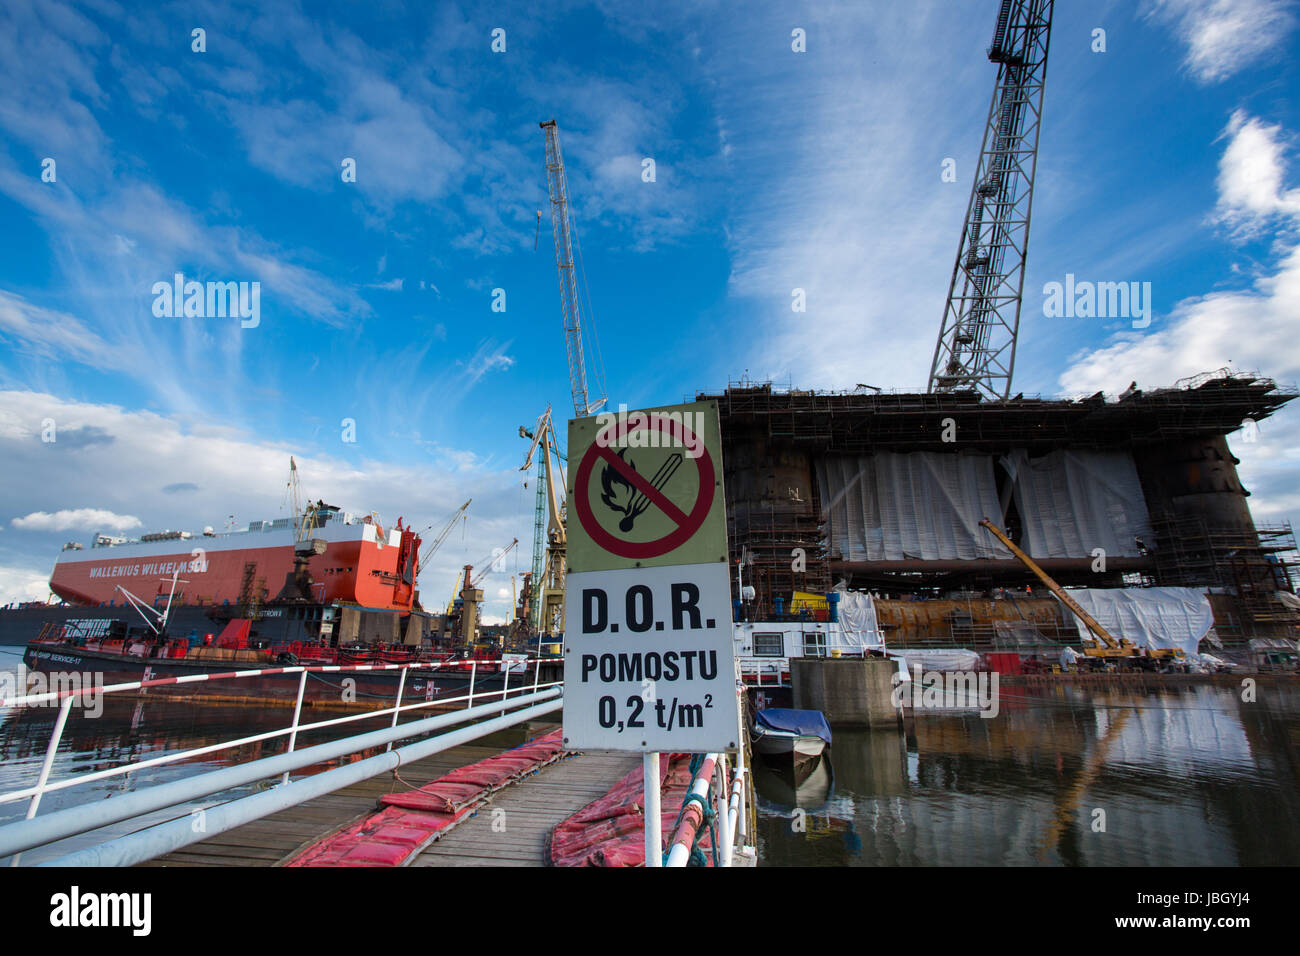 GDANSK, Polonia - 19 settembre: Docking oil rig presso il Cantiere di Danzica in costruzione con un cielo blu chiaro in background. Oil Rig pesi 12 mila tonnellate. Gdansk, Polonia, 2013 Foto Stock